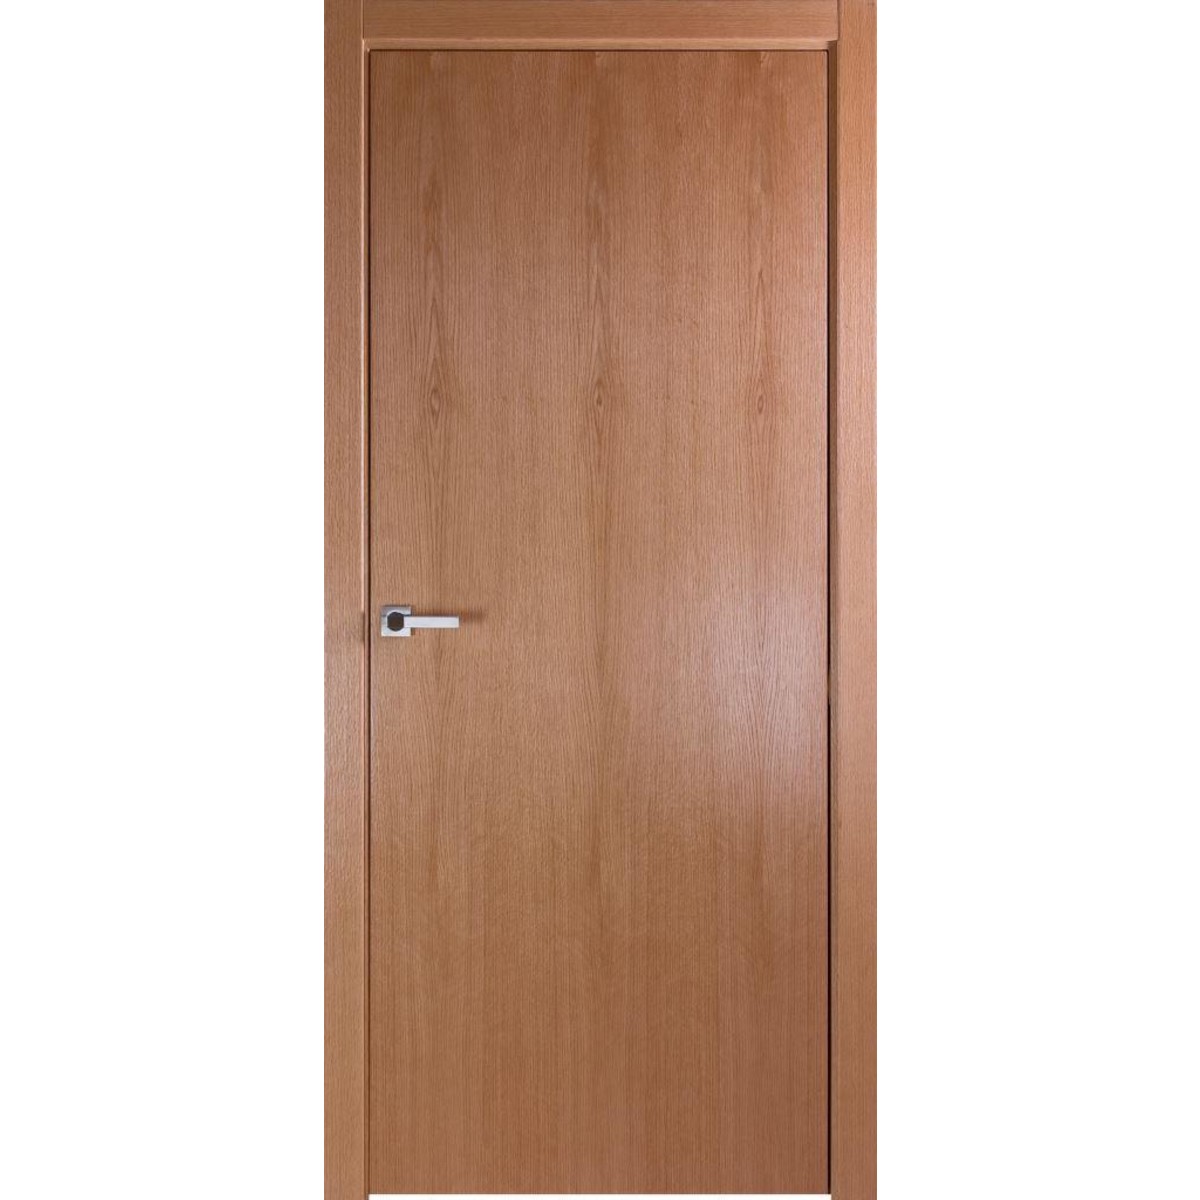 Дверь межкомнатная глухая без замка и петель в комплекте Лофтвуд 1 90x200 см шпон цвет дуб американский